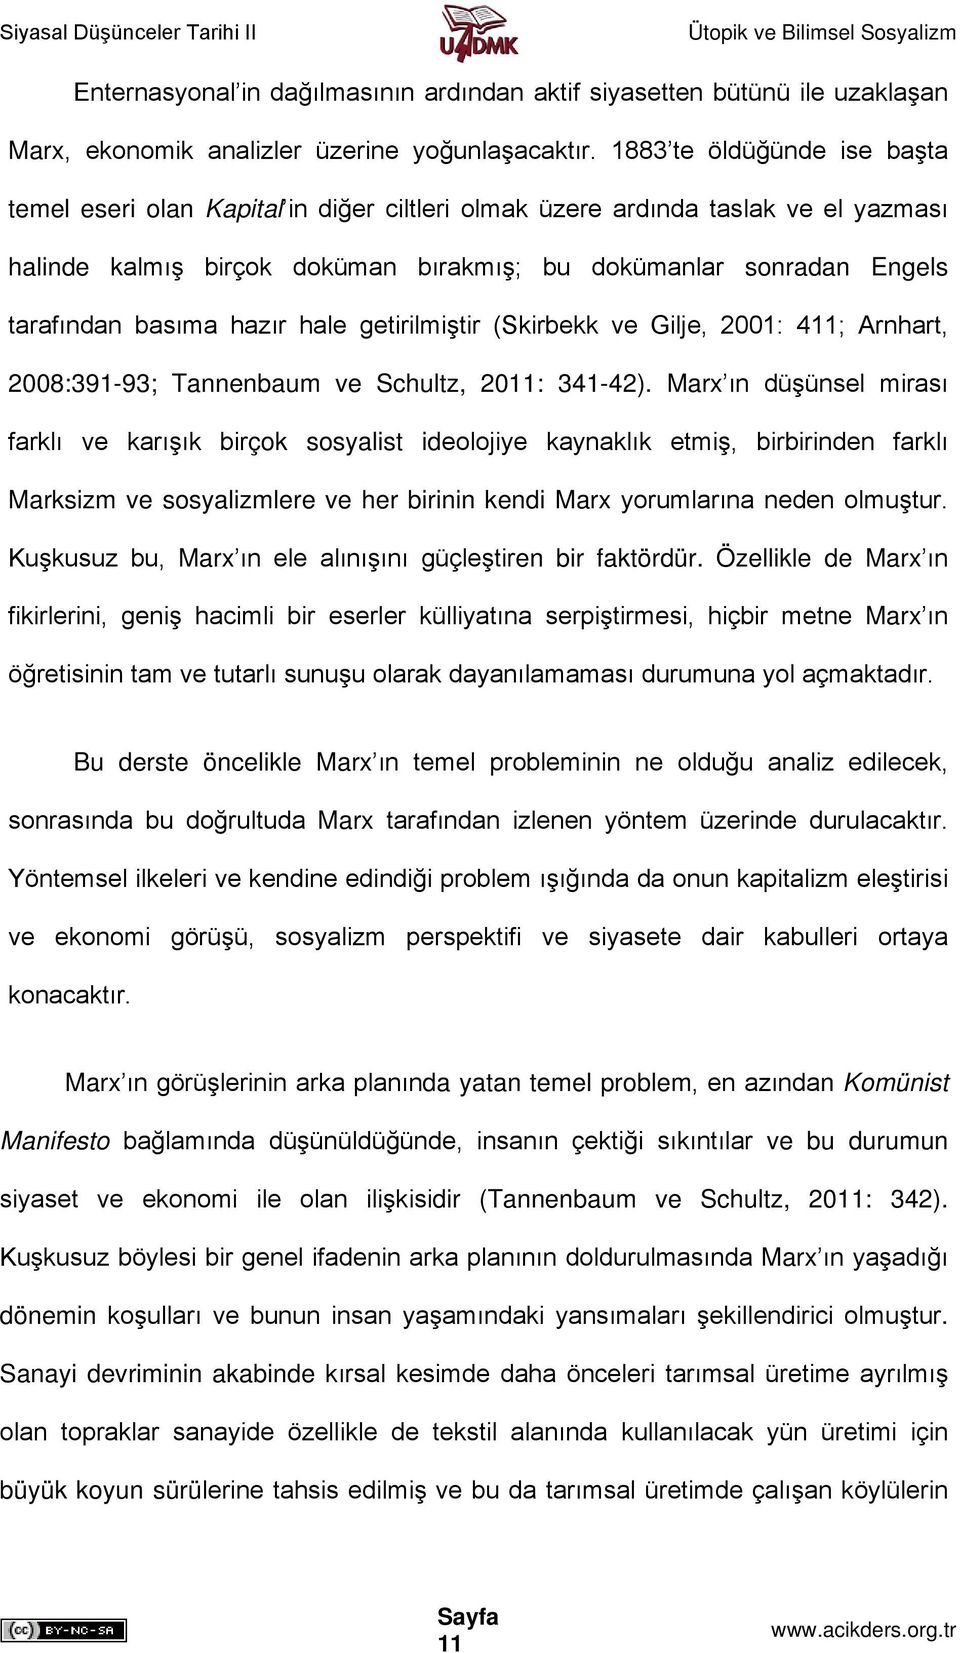 hazır hale getirilmiştir (Skirbekk ve Gilje, 2001: 411; Arnhart, 2008:391-93; Tannenbaum ve Schultz, 2011: 341-42).